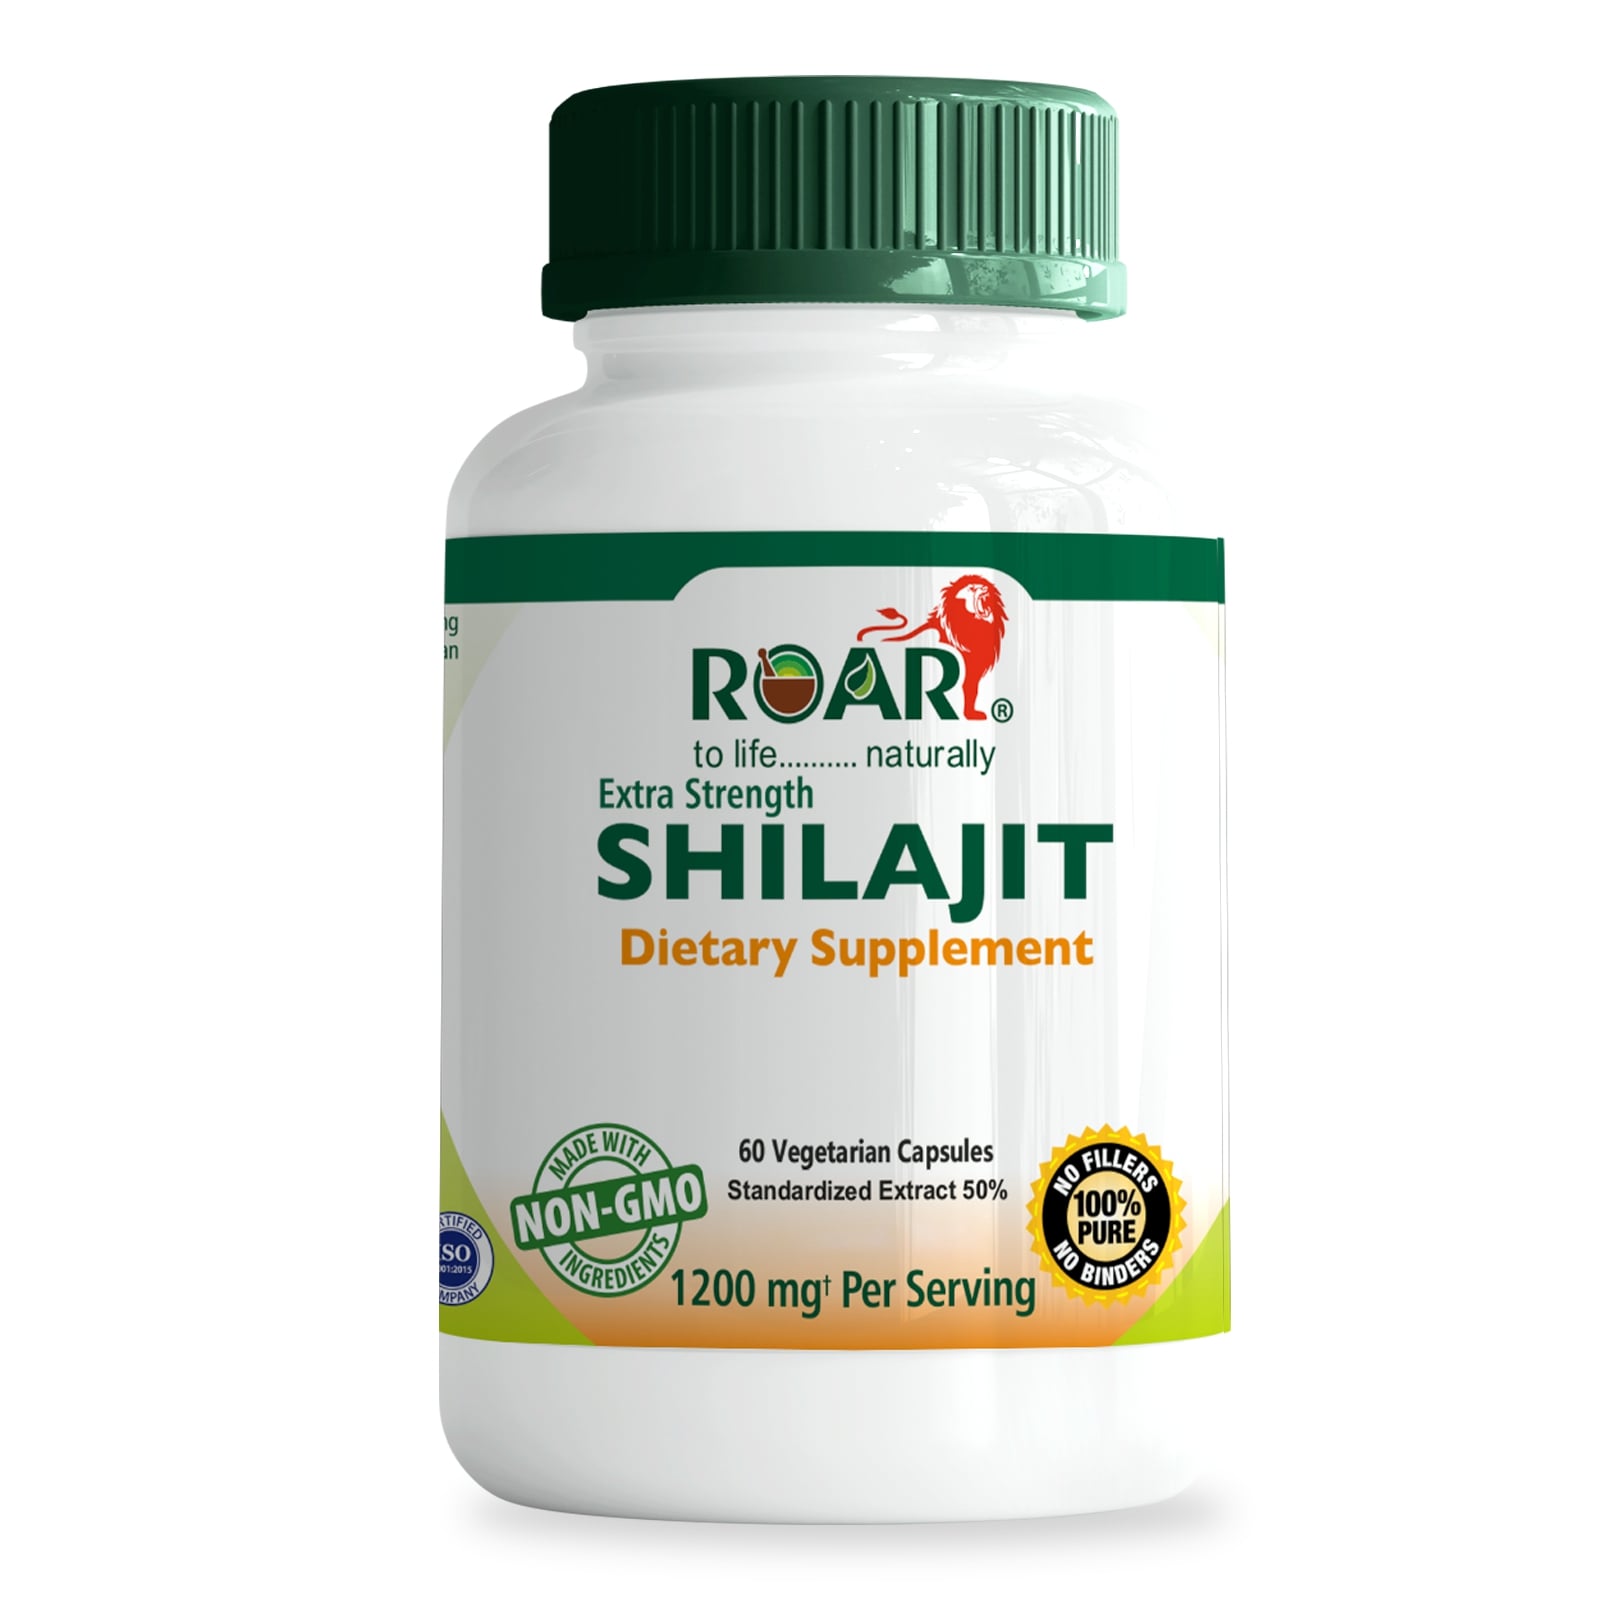 Shilajit supplements